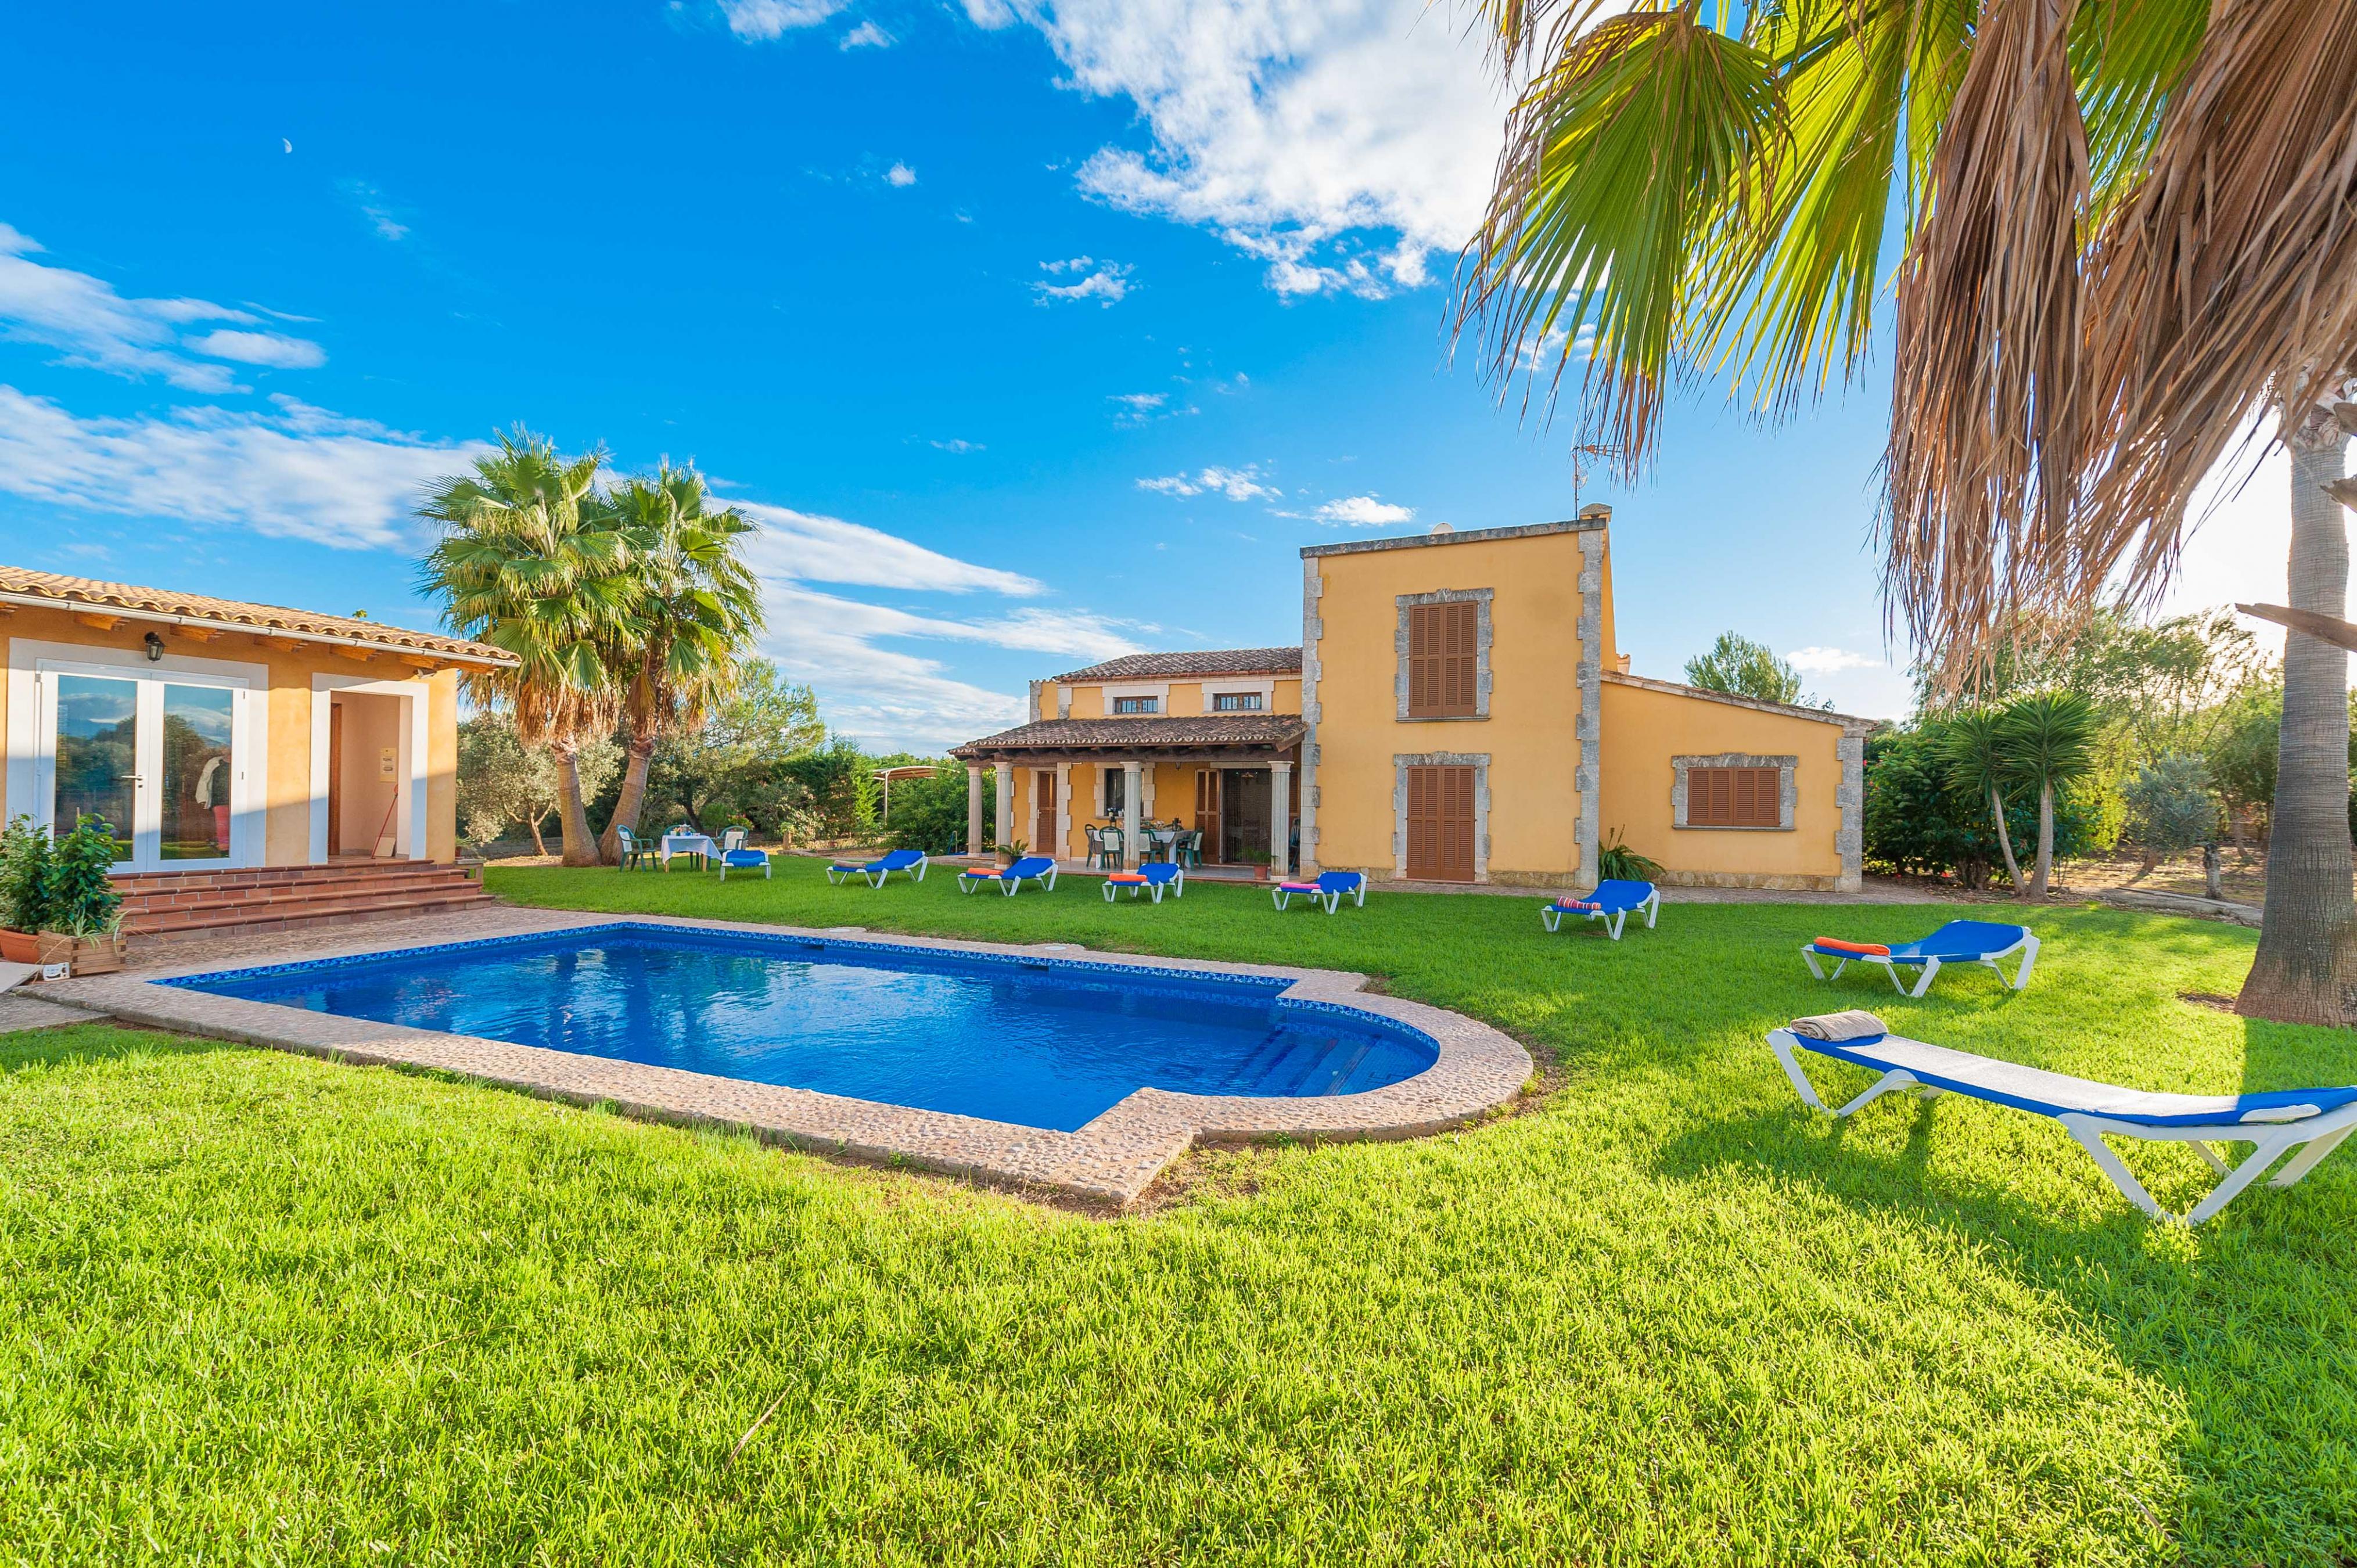 Property Image 1 - CA NA GRANADA - Villa with private pool in Muro. Free WiFi